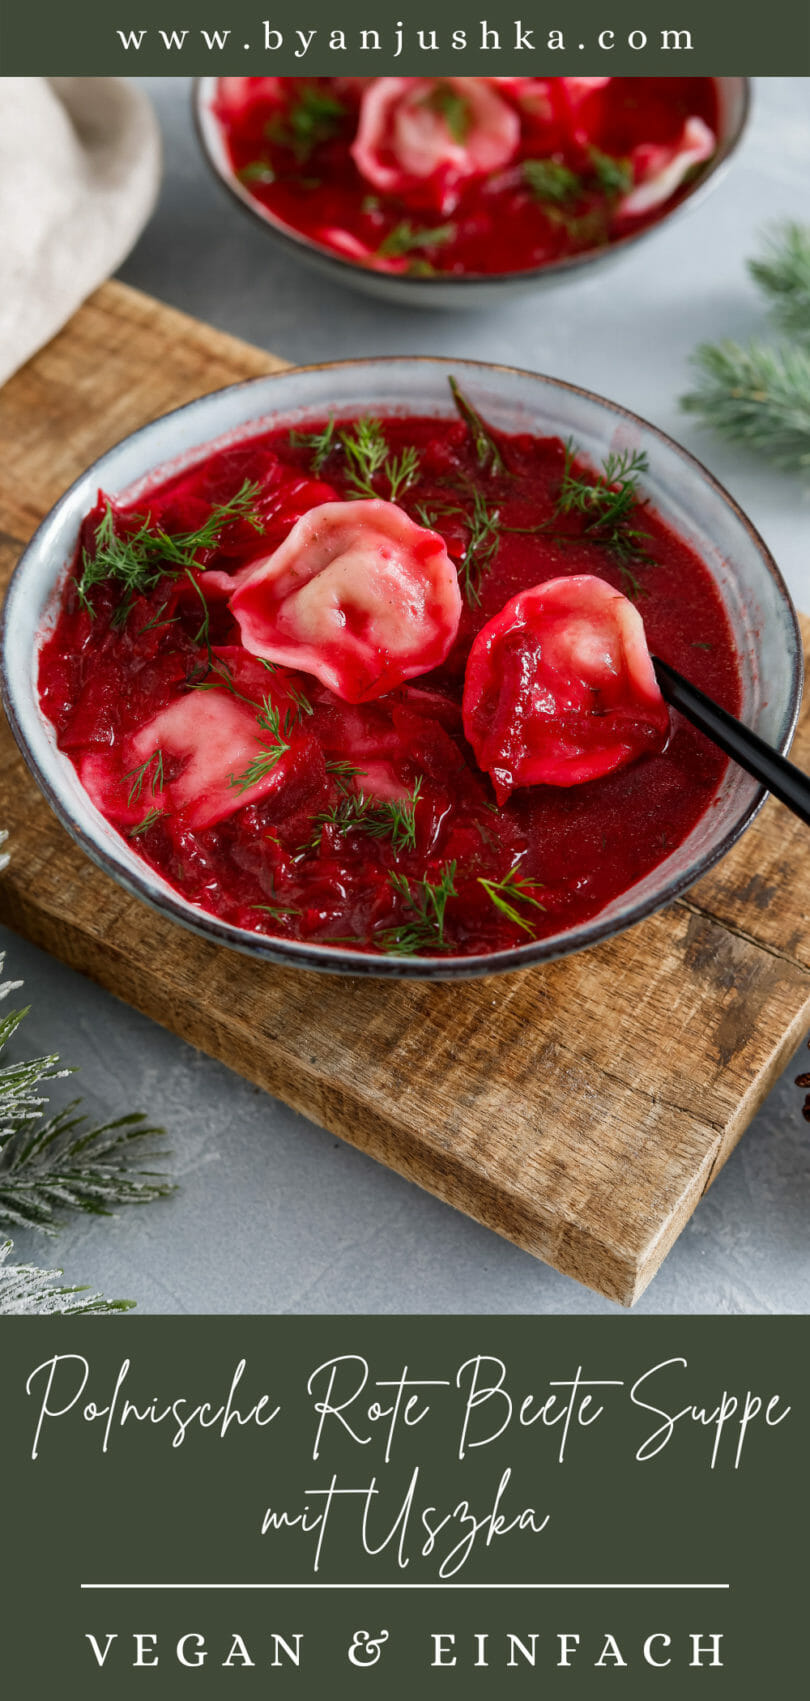 Collage zum Rezept "Polnische Rote Beete Suppe mit Uszka" zum teilen auf Pinterest